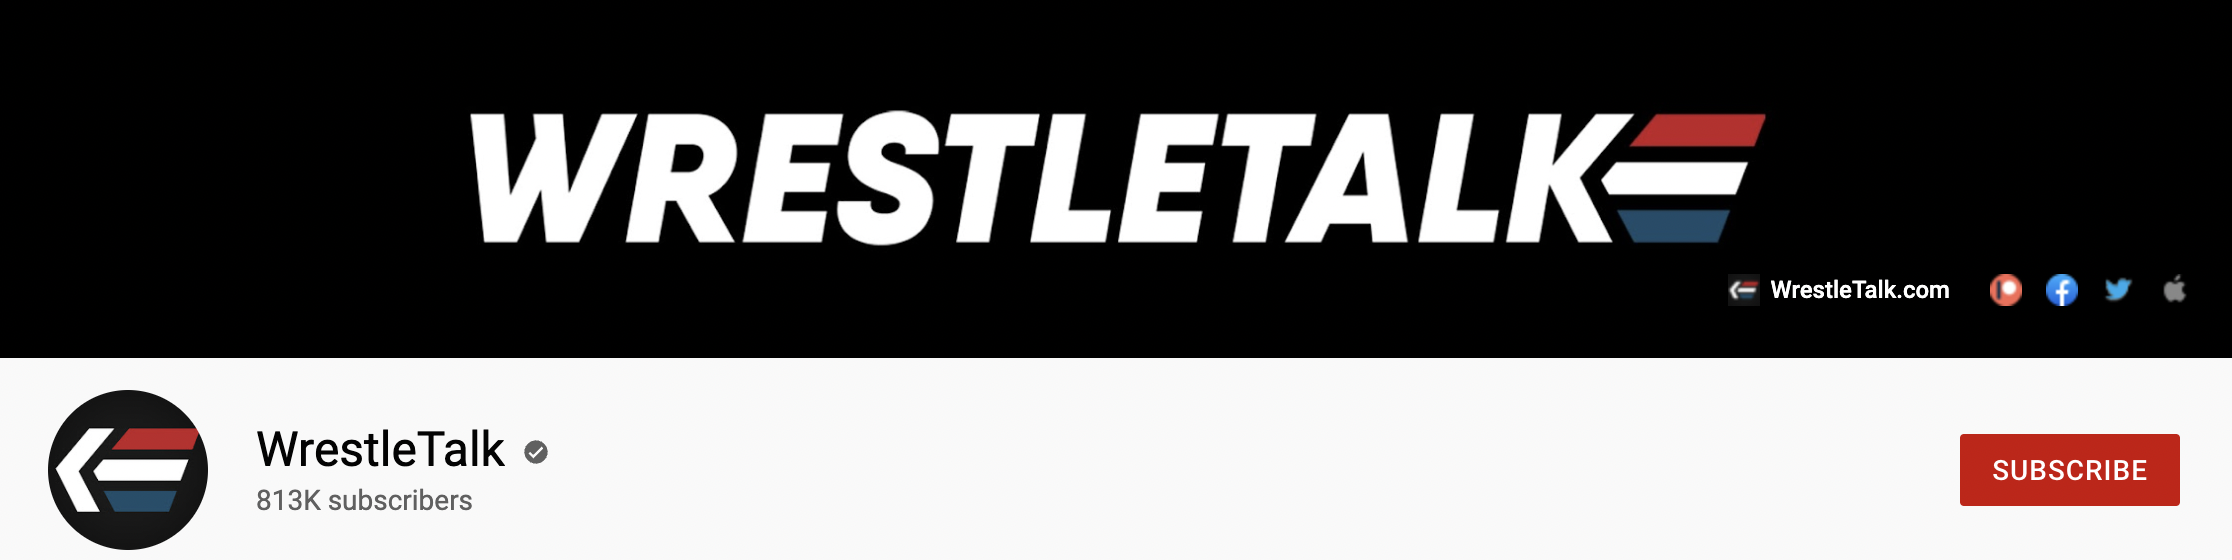 WrestleTalk Youtube Channel